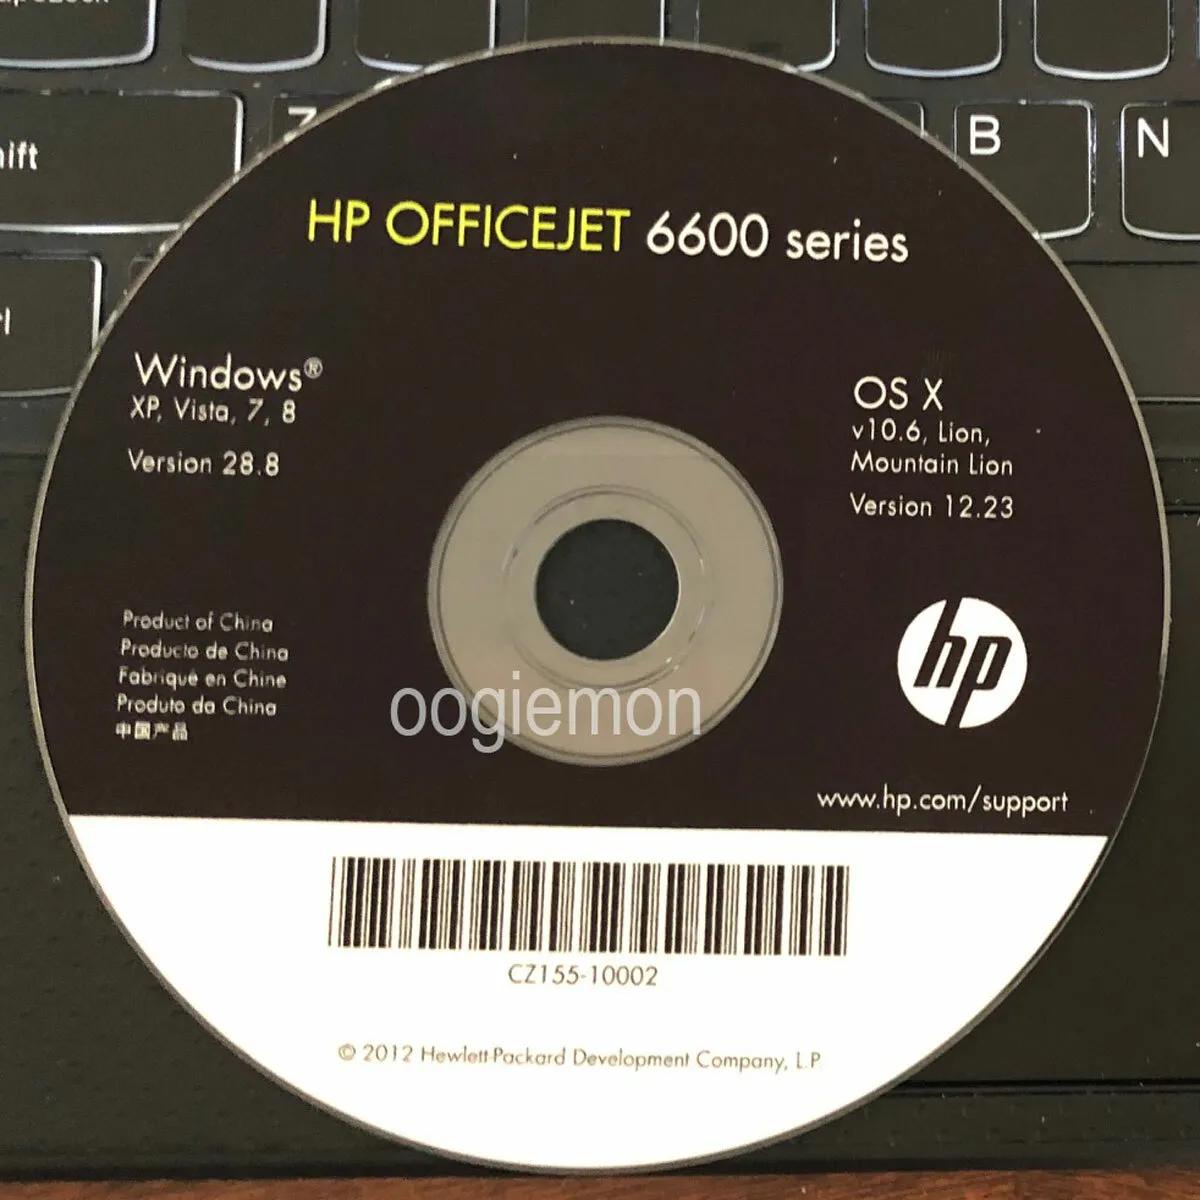 hewlett packard 6600 printer software - How do I update my Officejet 6600